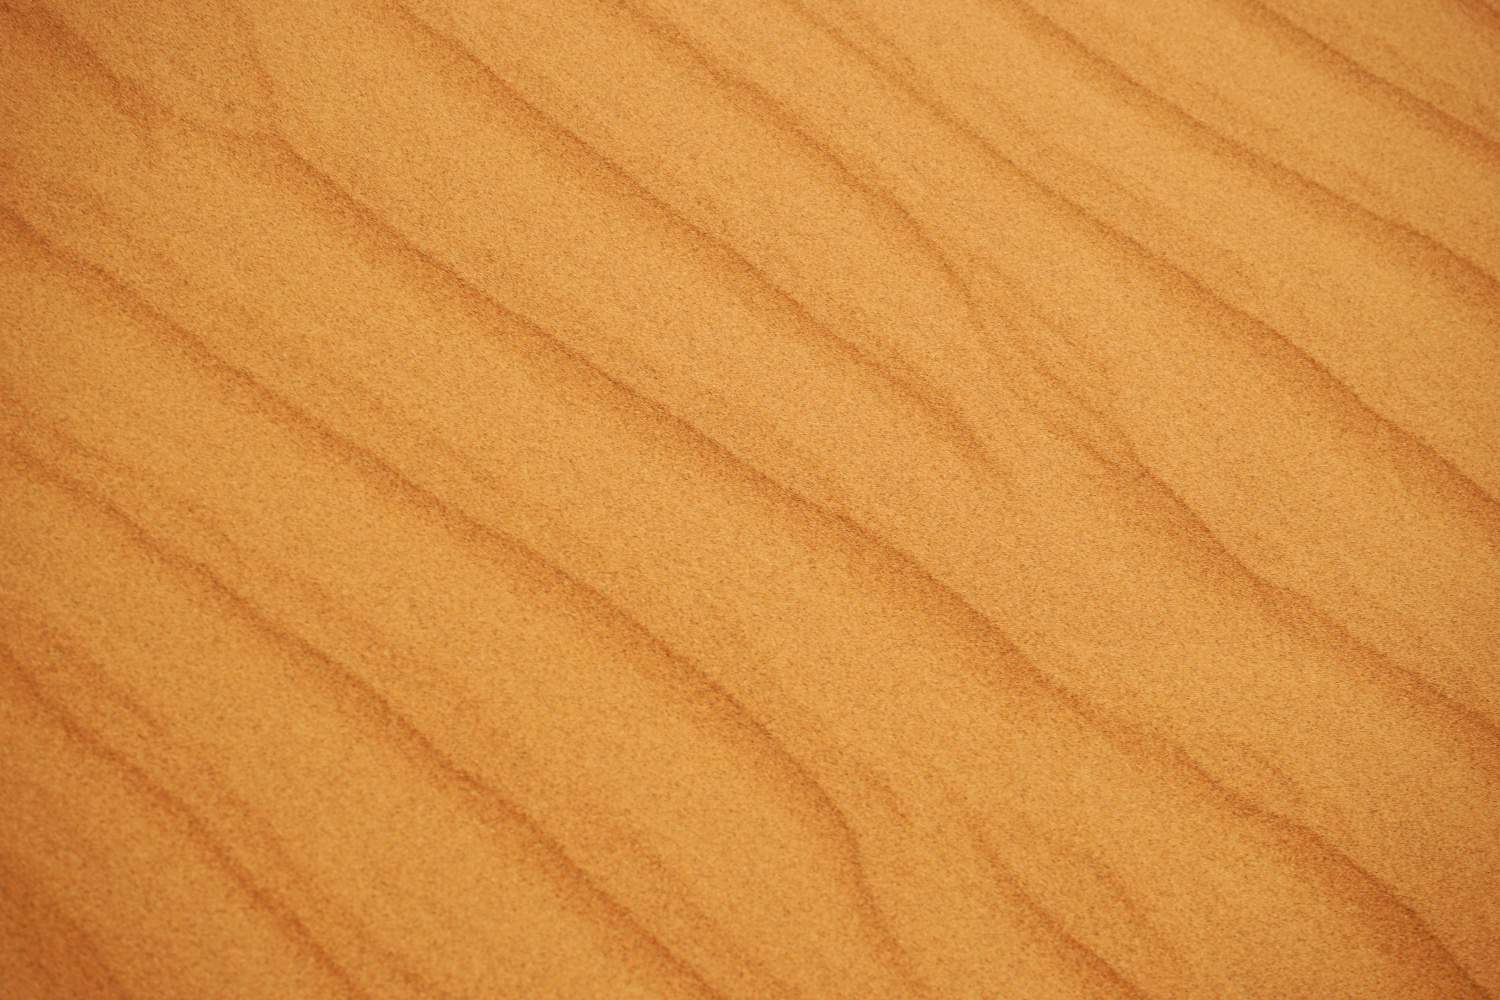 Close up of Dubai desert